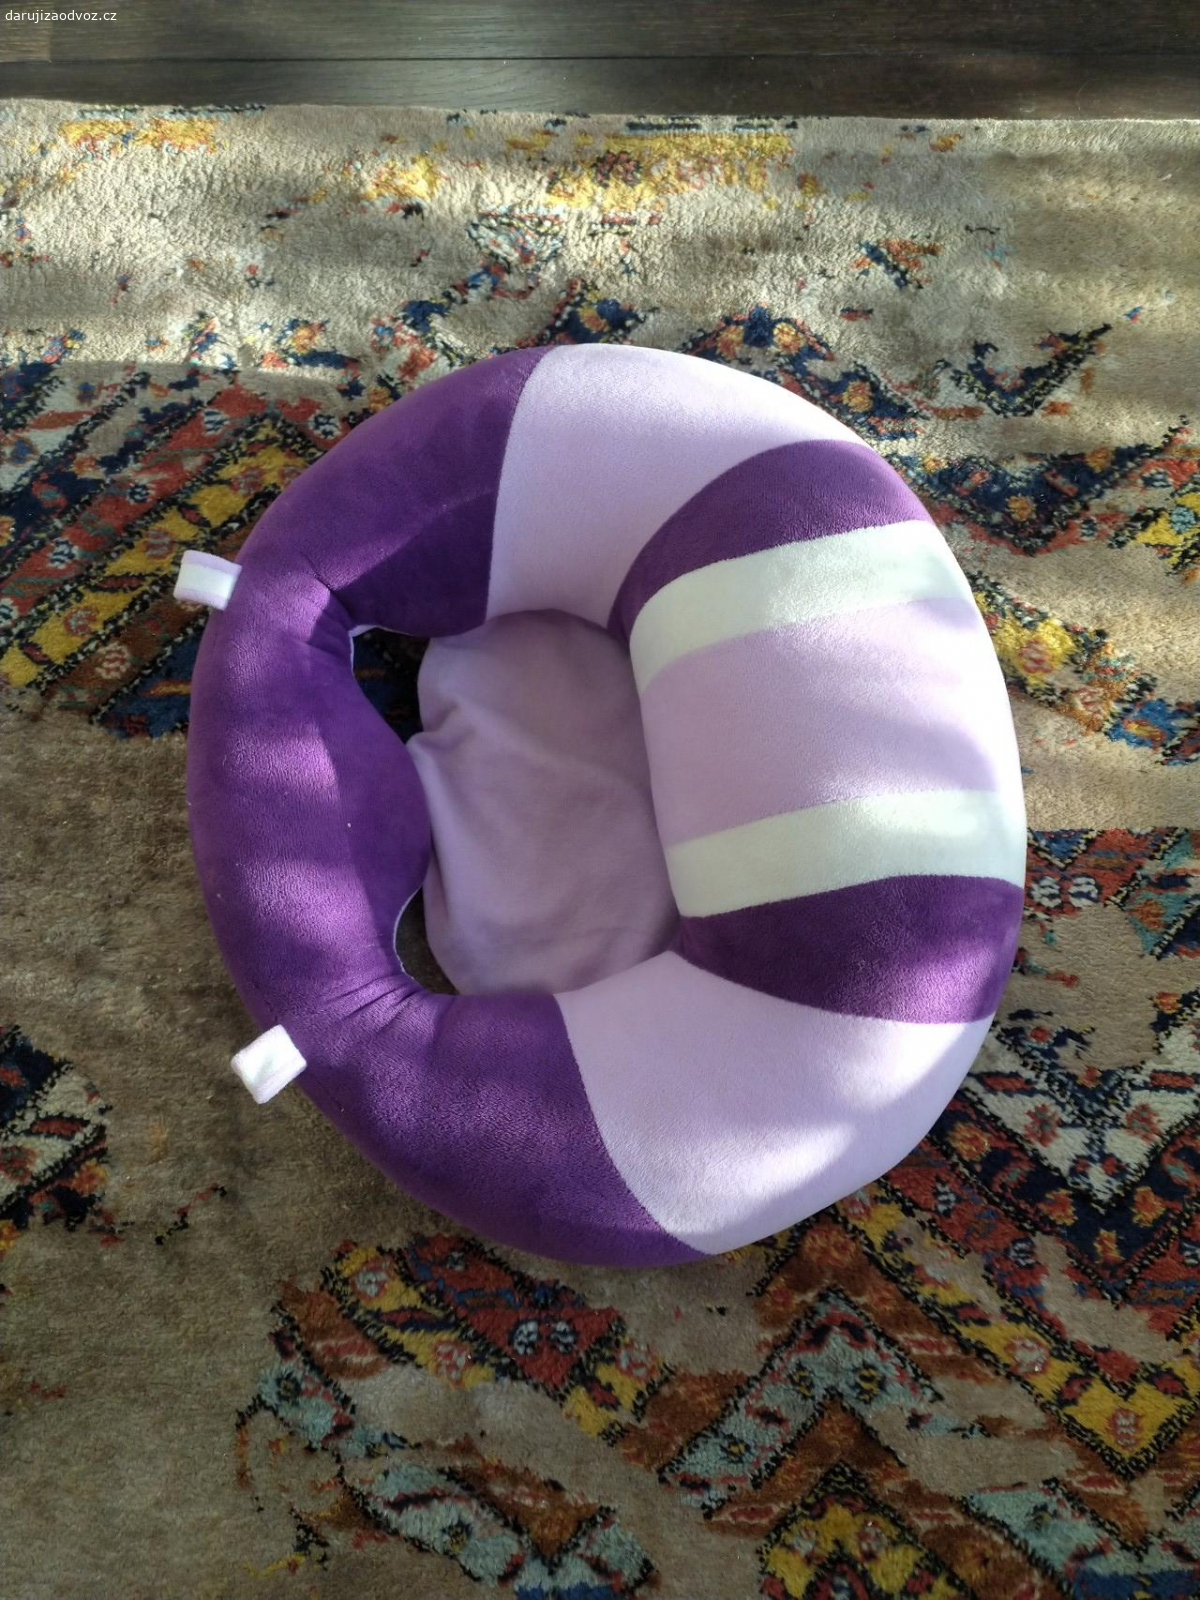 Dětské křeslo. Jedná se o textilní dětskou sedačku k sezení na rovné ploše.(postel, podlaha) Barva fialová. Mělo by jít o pomůcku na sezení. Popřípadě fixaci dítěte v sedu. Je pratelné v pračce.